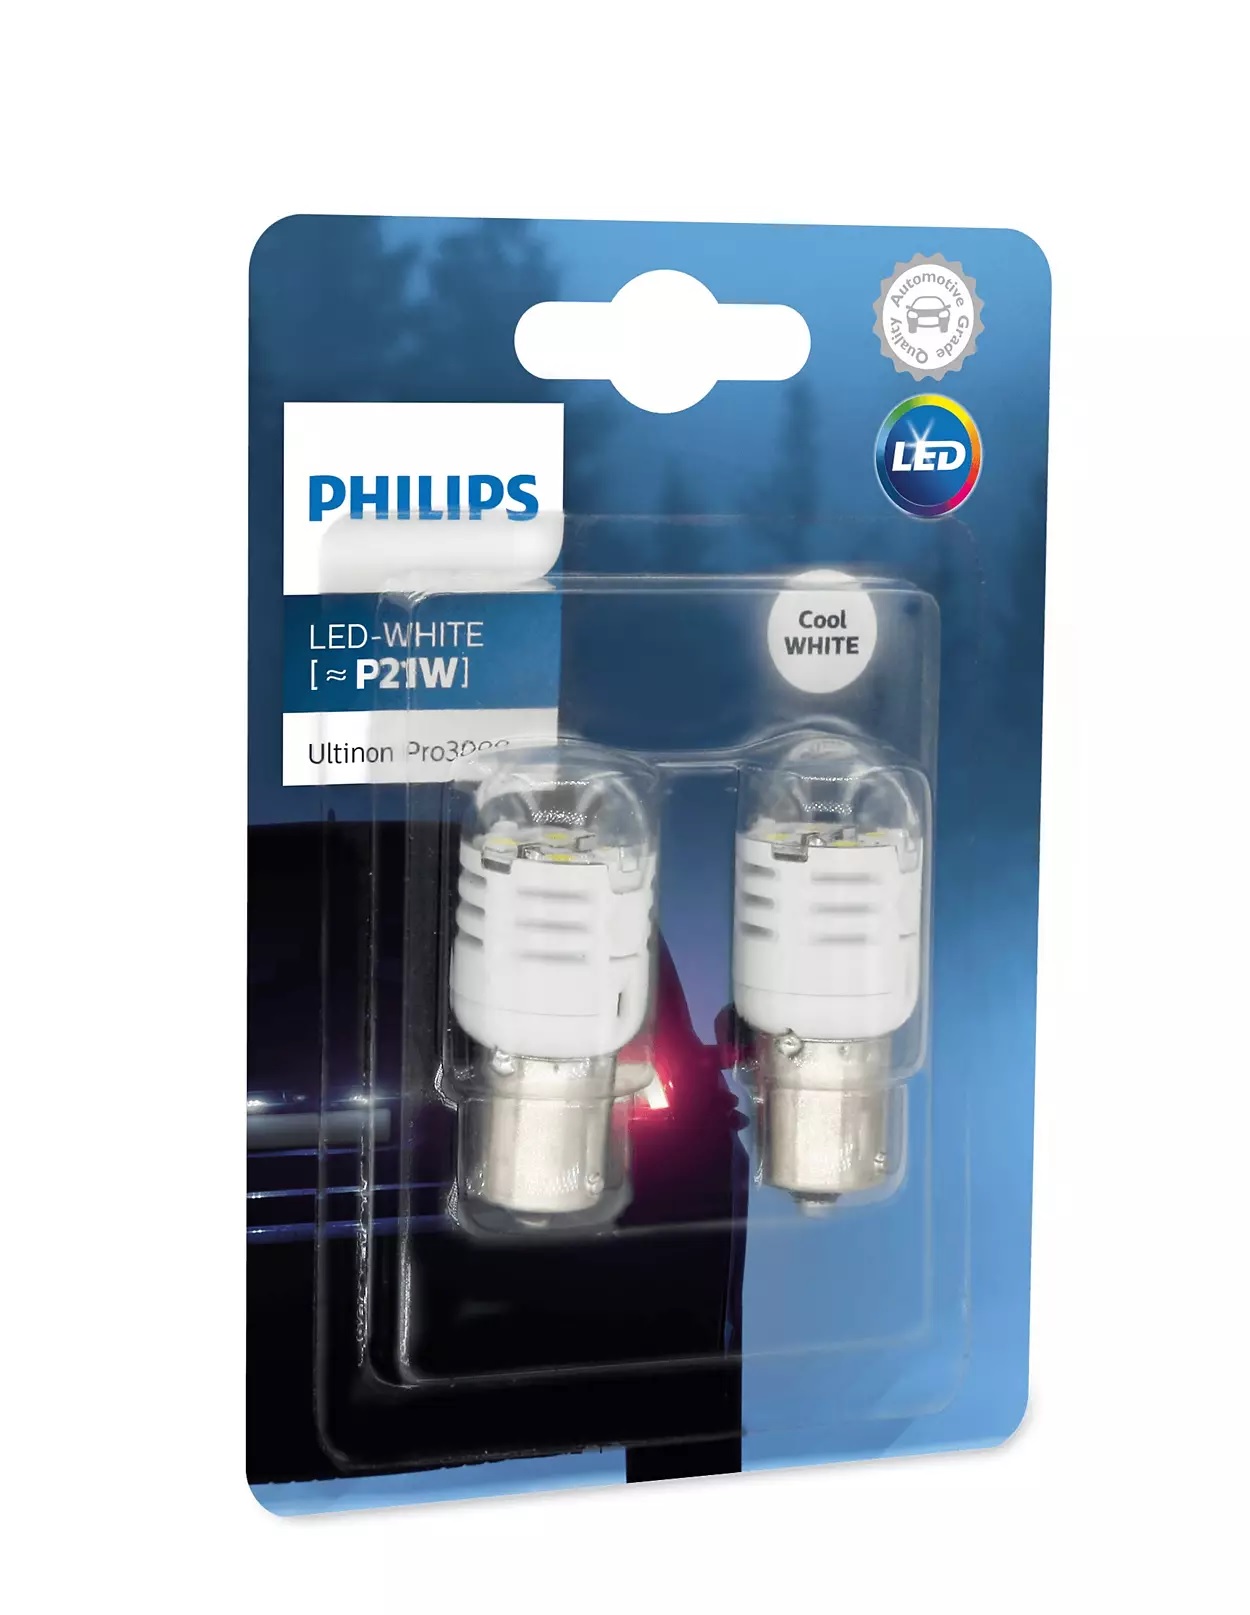 LED Philips P21W PRO3000 Κωδικος 11498U30CWB2 Τιμή Σετ: 25 ευρώ